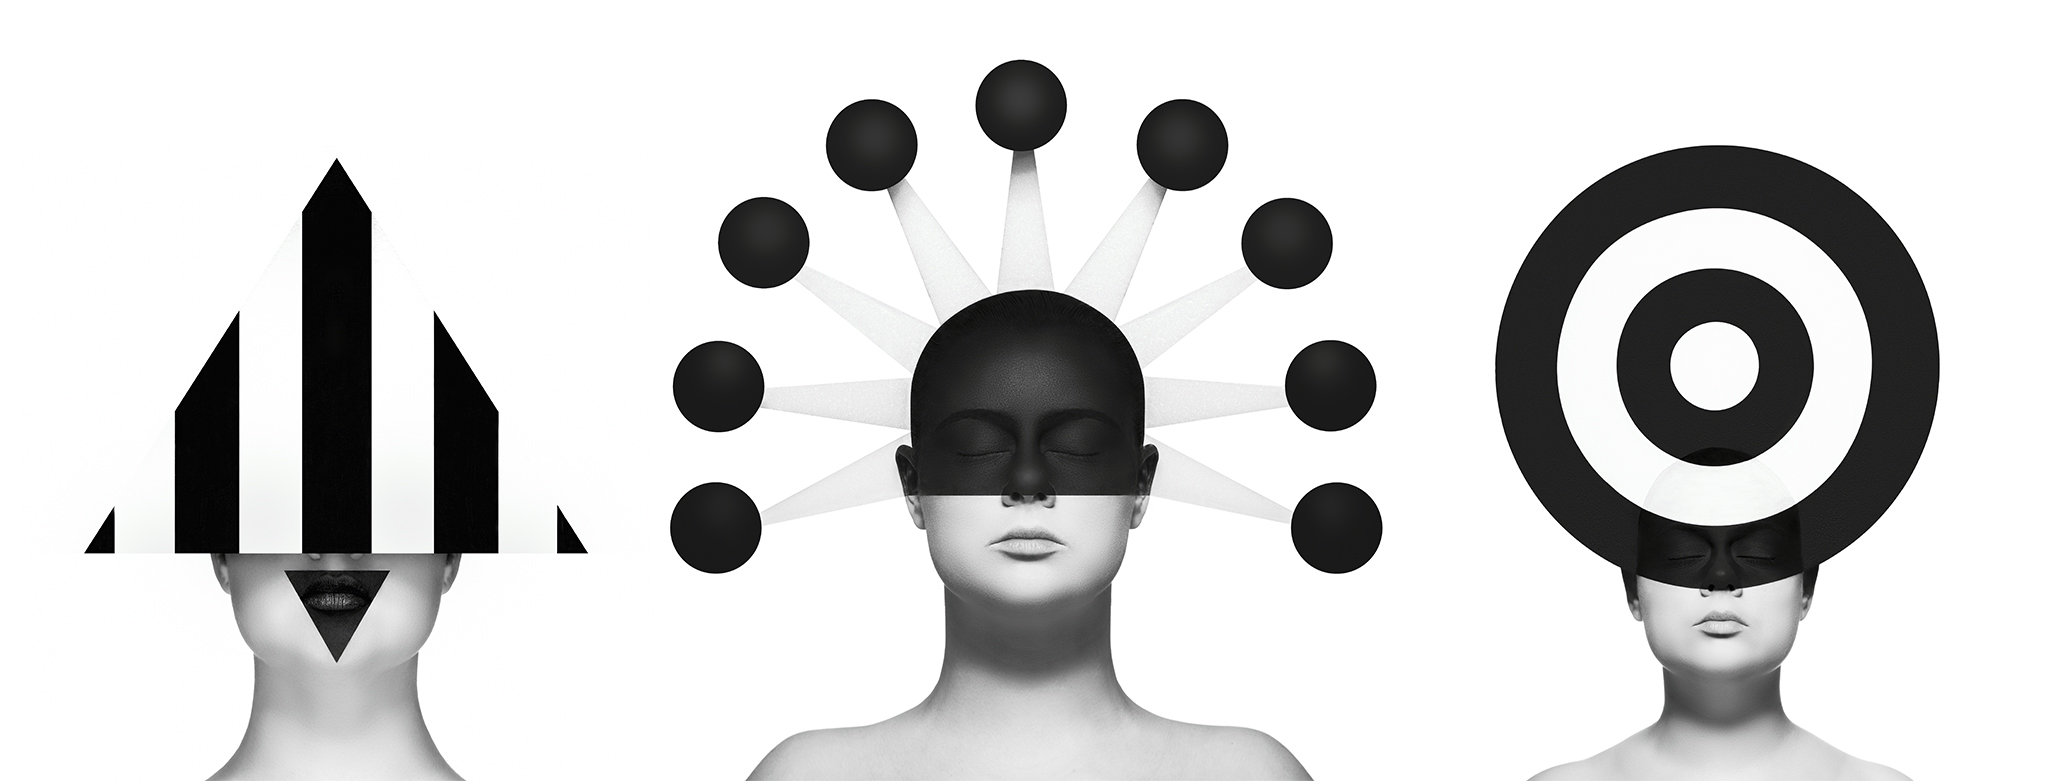 Photo artistique en noir et blanc où l'on voit le visage de 3 femmes avec des formes géométriques